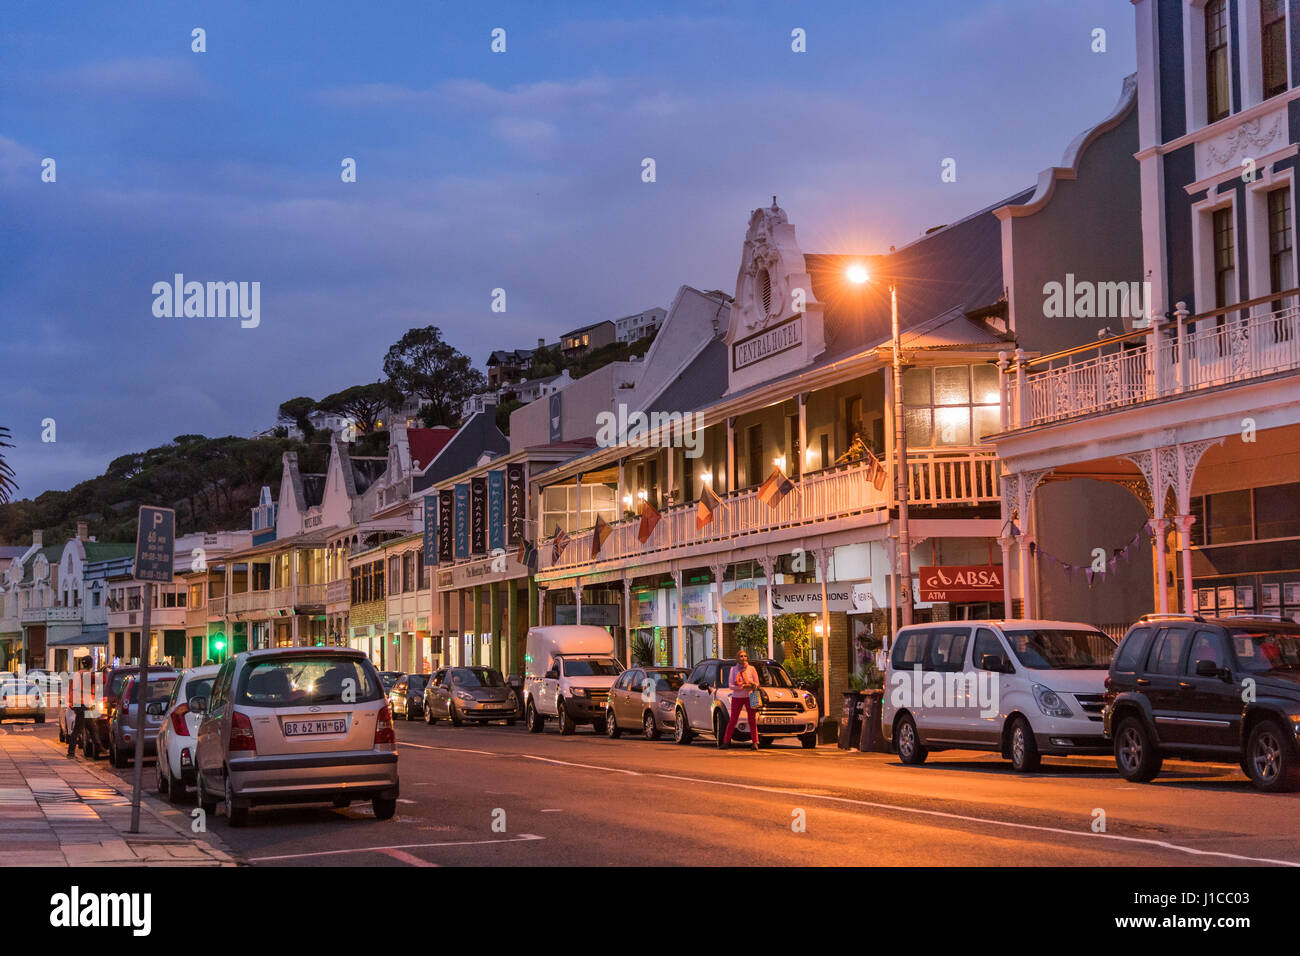 Rue principale avec des maisons victoriennes et Cape Dutch, Crépuscule, Simonstown, Province de Western Cape, Afrique du Sud Banque D'Images